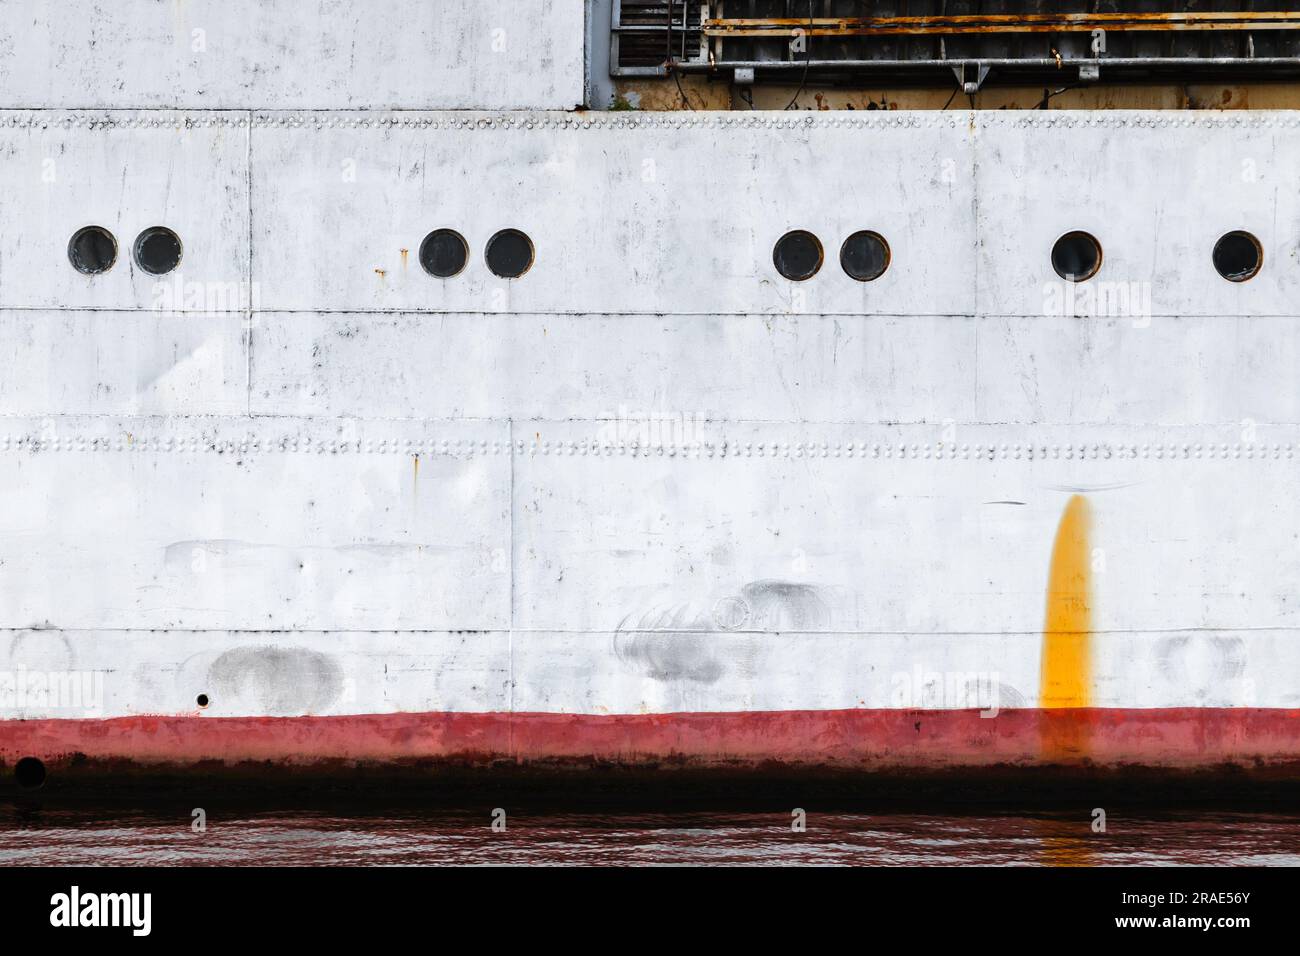 Coque de navire ancien avec ligne d'eau rouge et hublots, transport industriel arrière-plan texture photo Banque D'Images